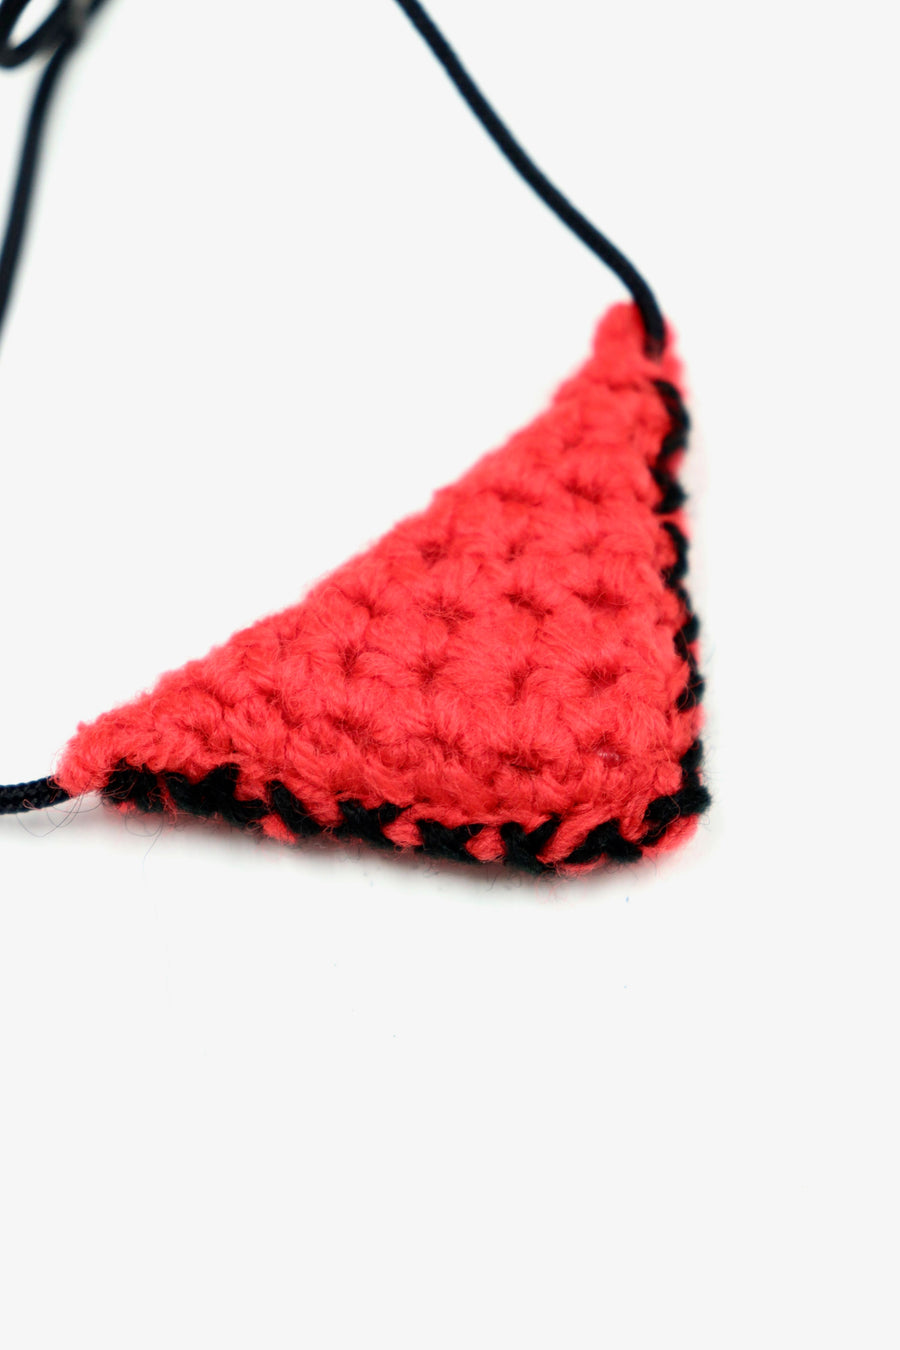 TOGA VIRILIS  Magic triangle small(RED)